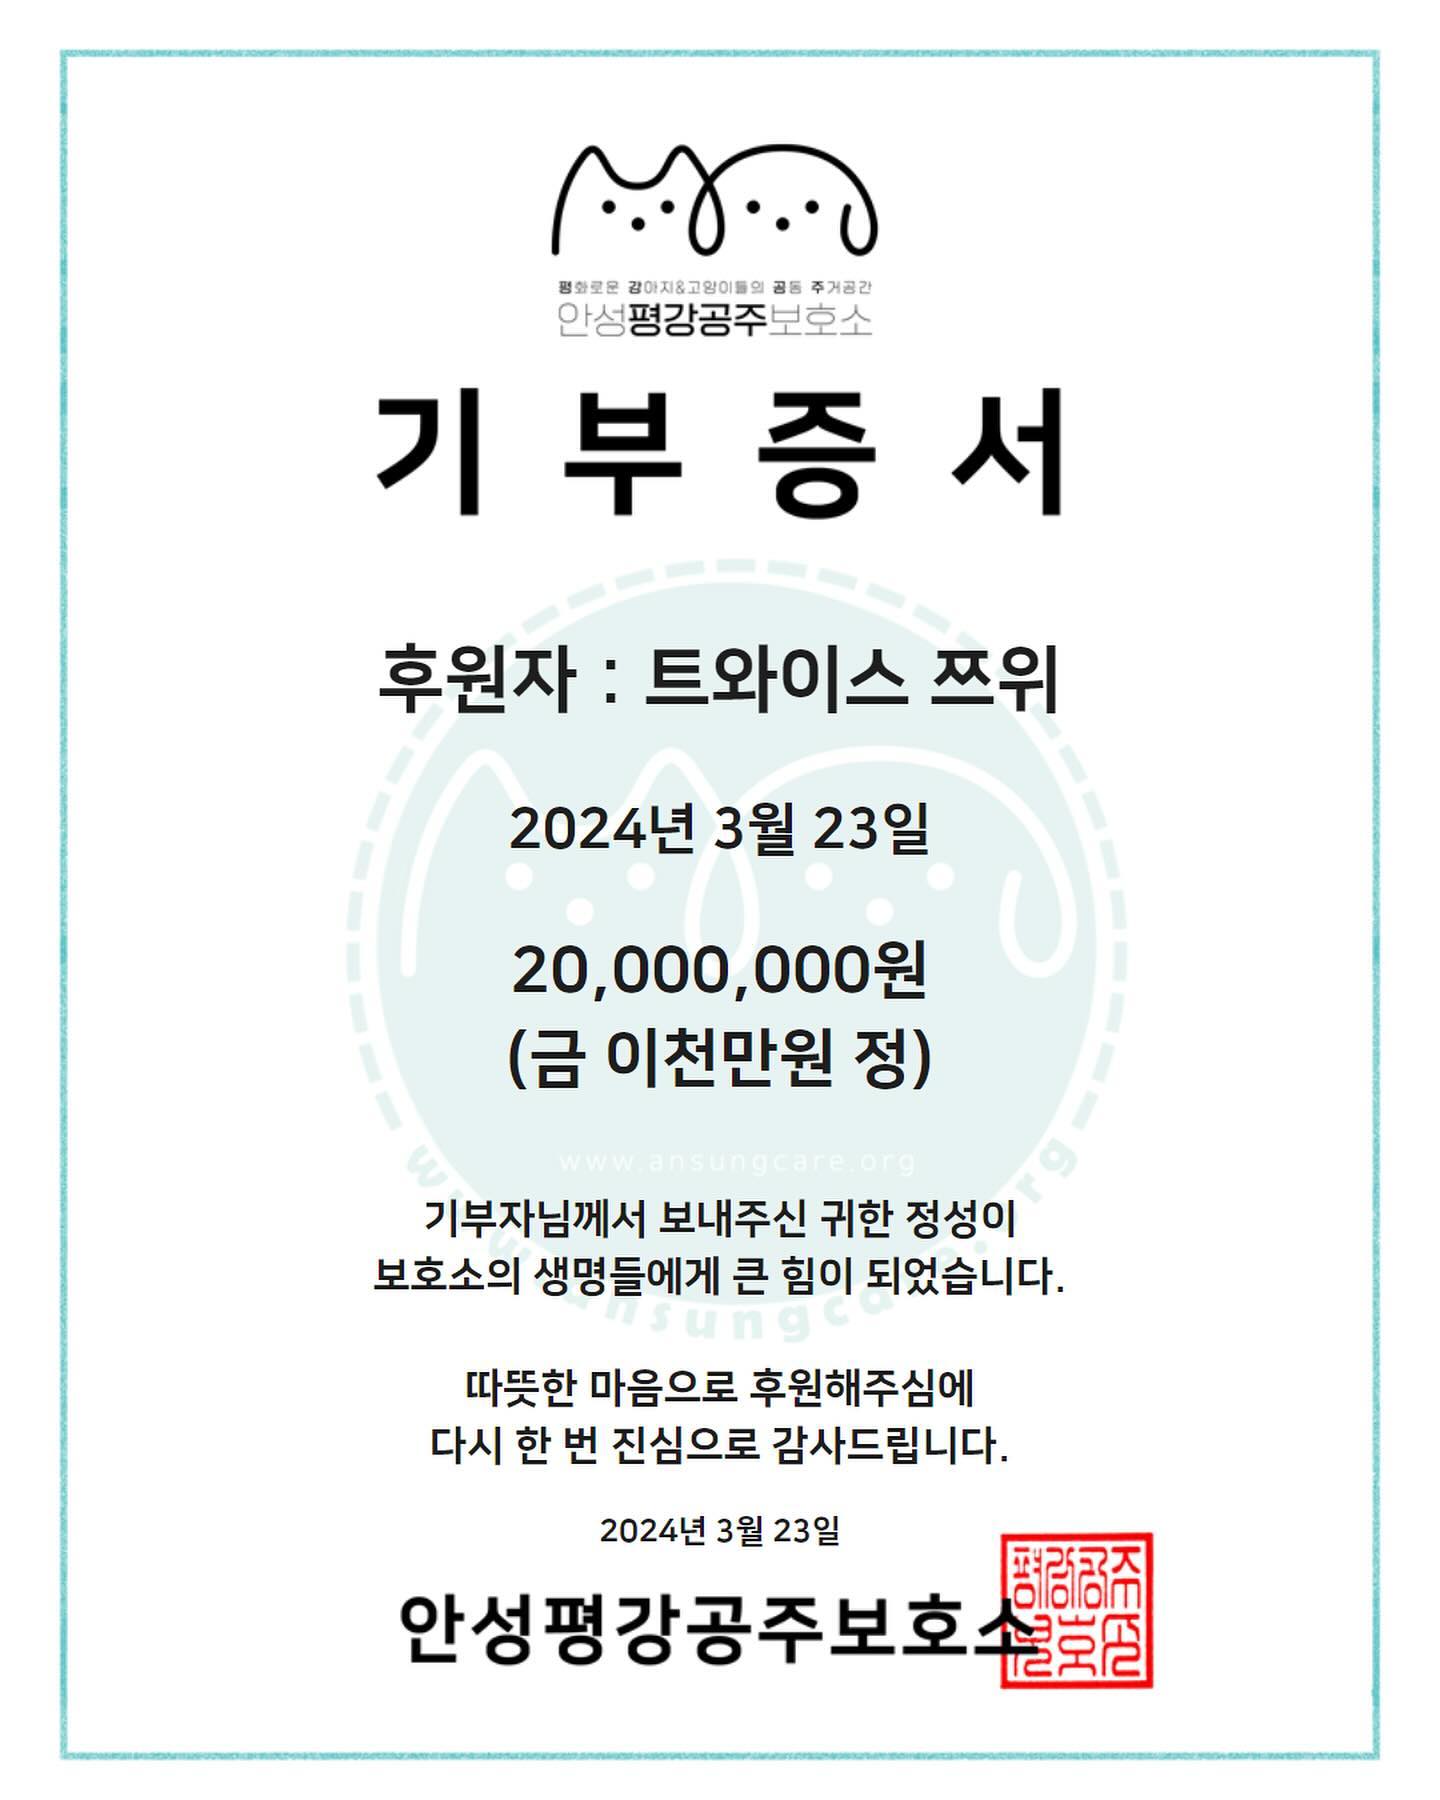 [閒聊] TWICE子瑜向狗狗庇護所捐贈2000萬韓元！